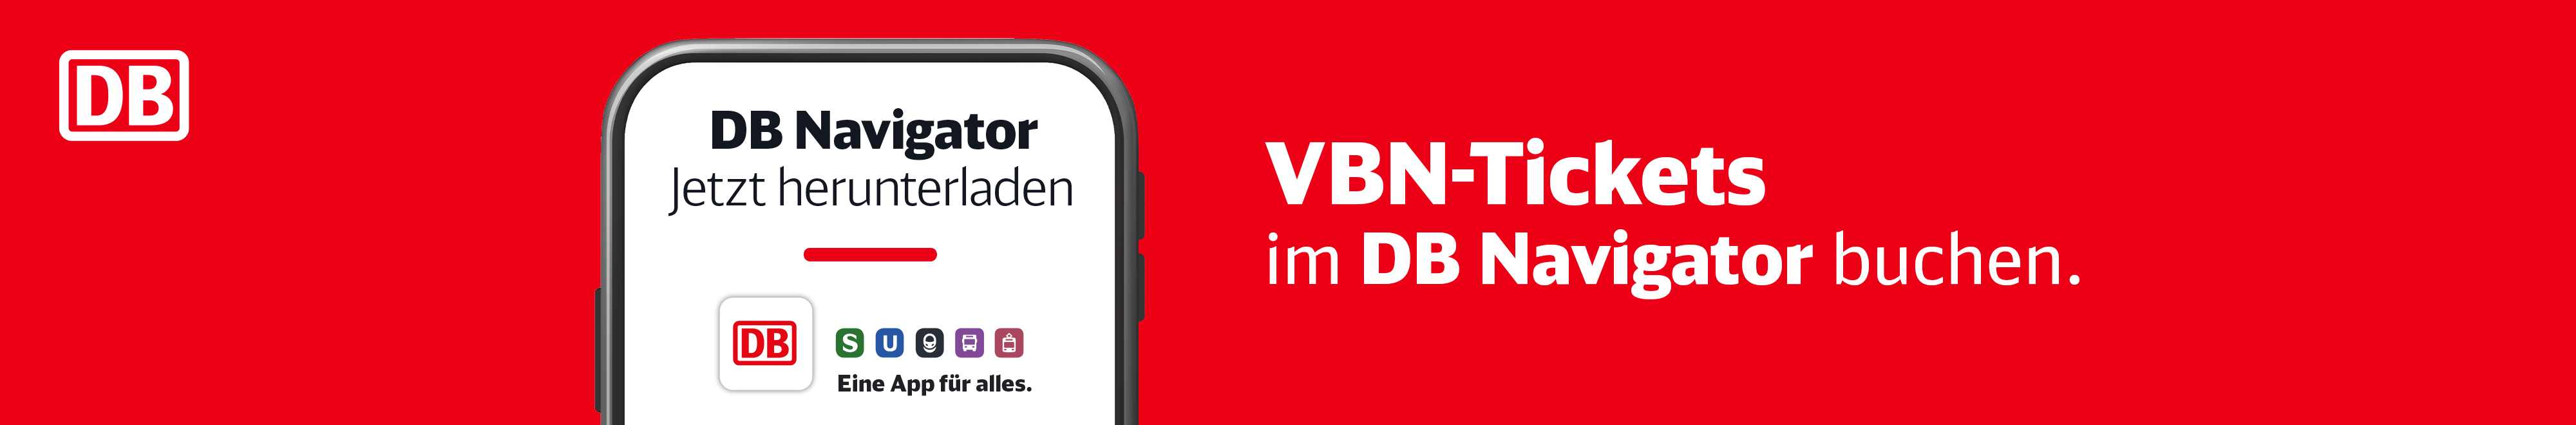 VBN Tickets im DB Navigator buchen